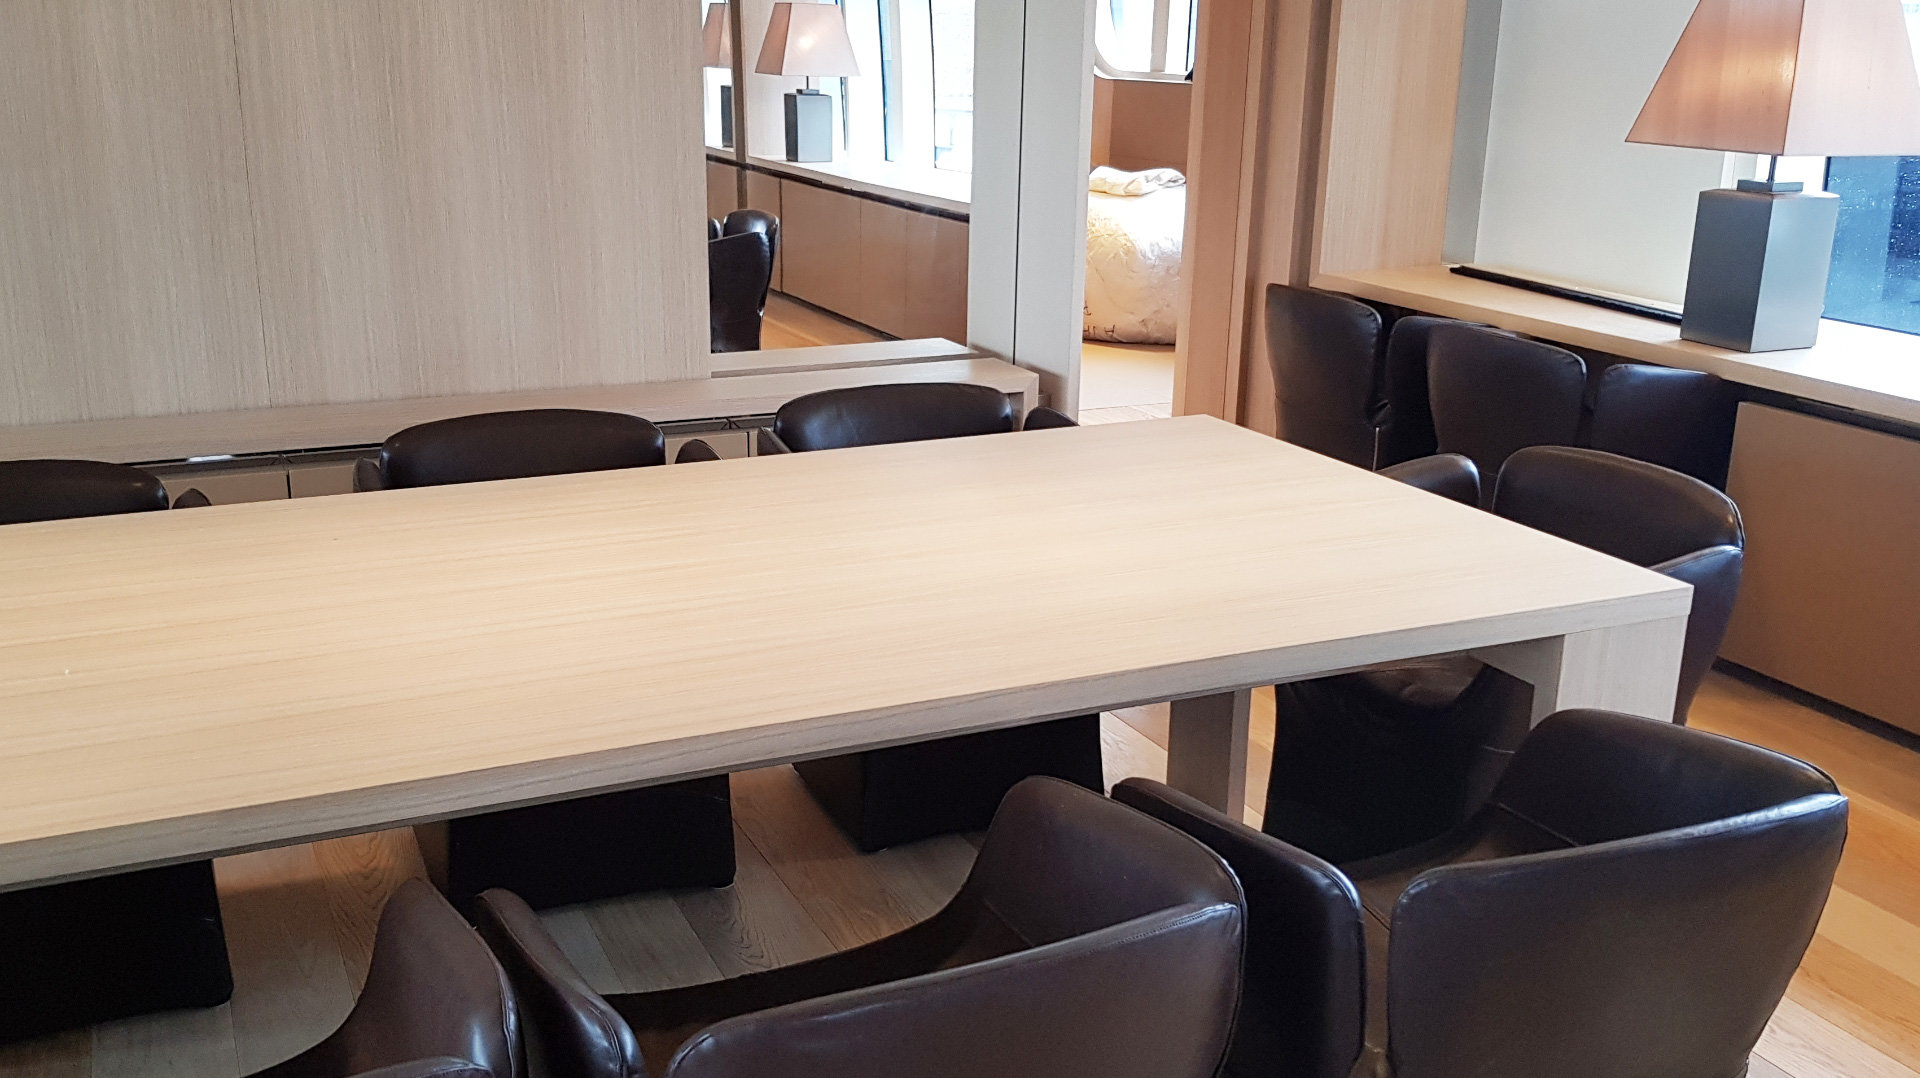  Hanák nábytek luxusní jachta konferenční stůl